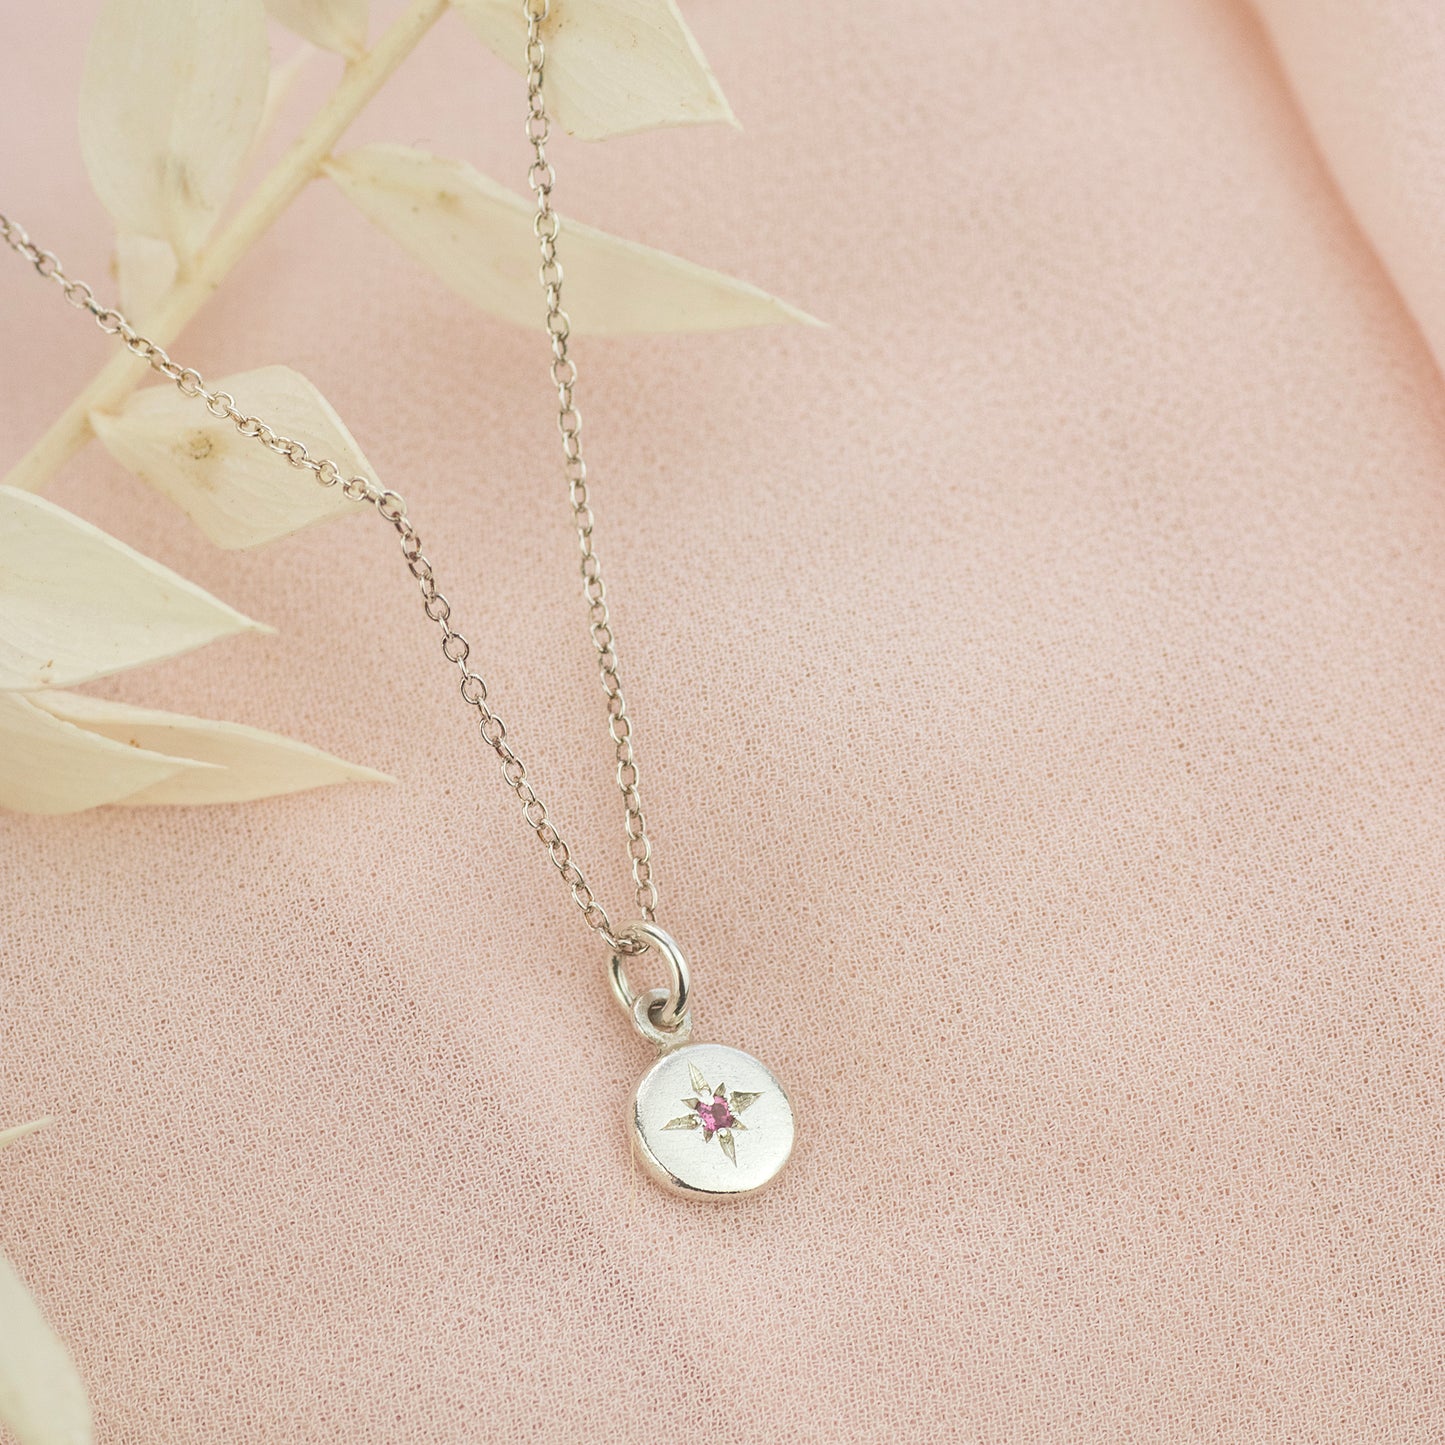 Gift for Granddaughter - Tiny Birthstone Star Set Pendant